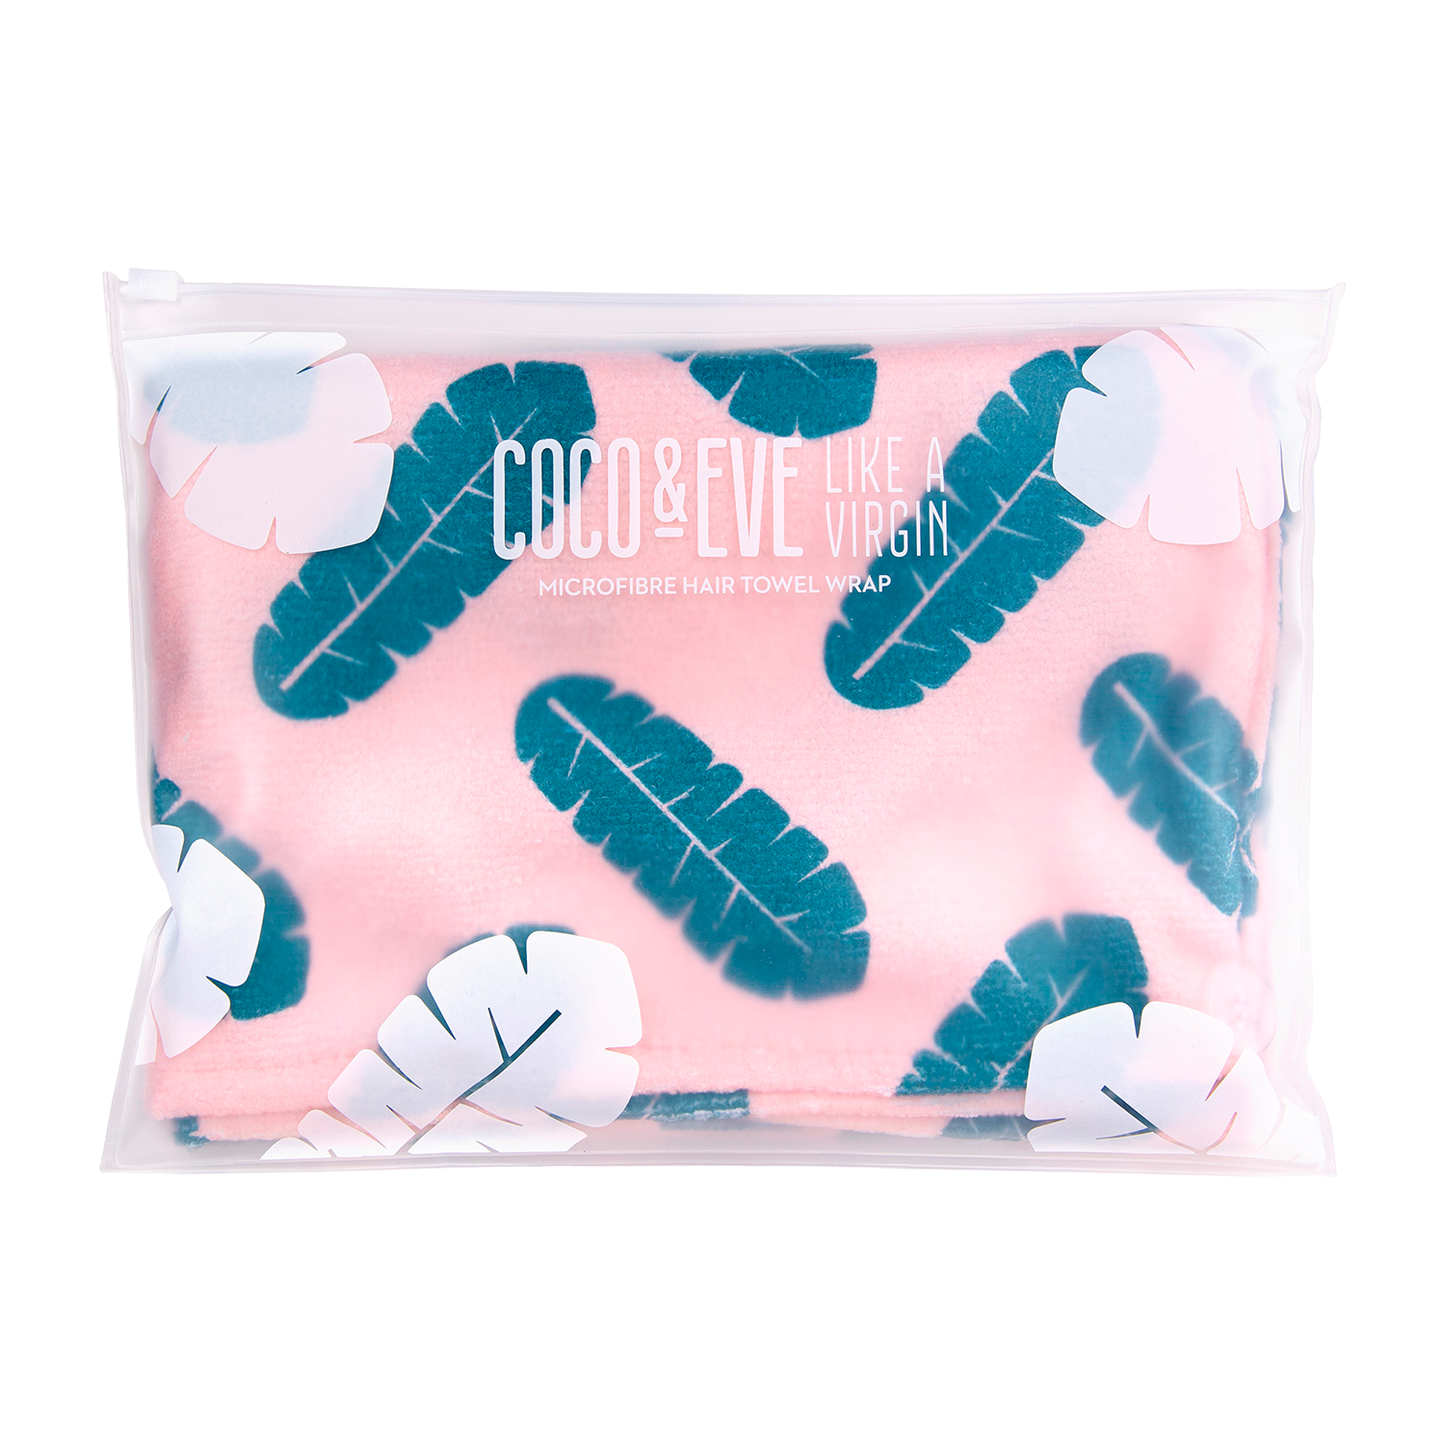 Coco & Eve Microfibre Towel Wrap